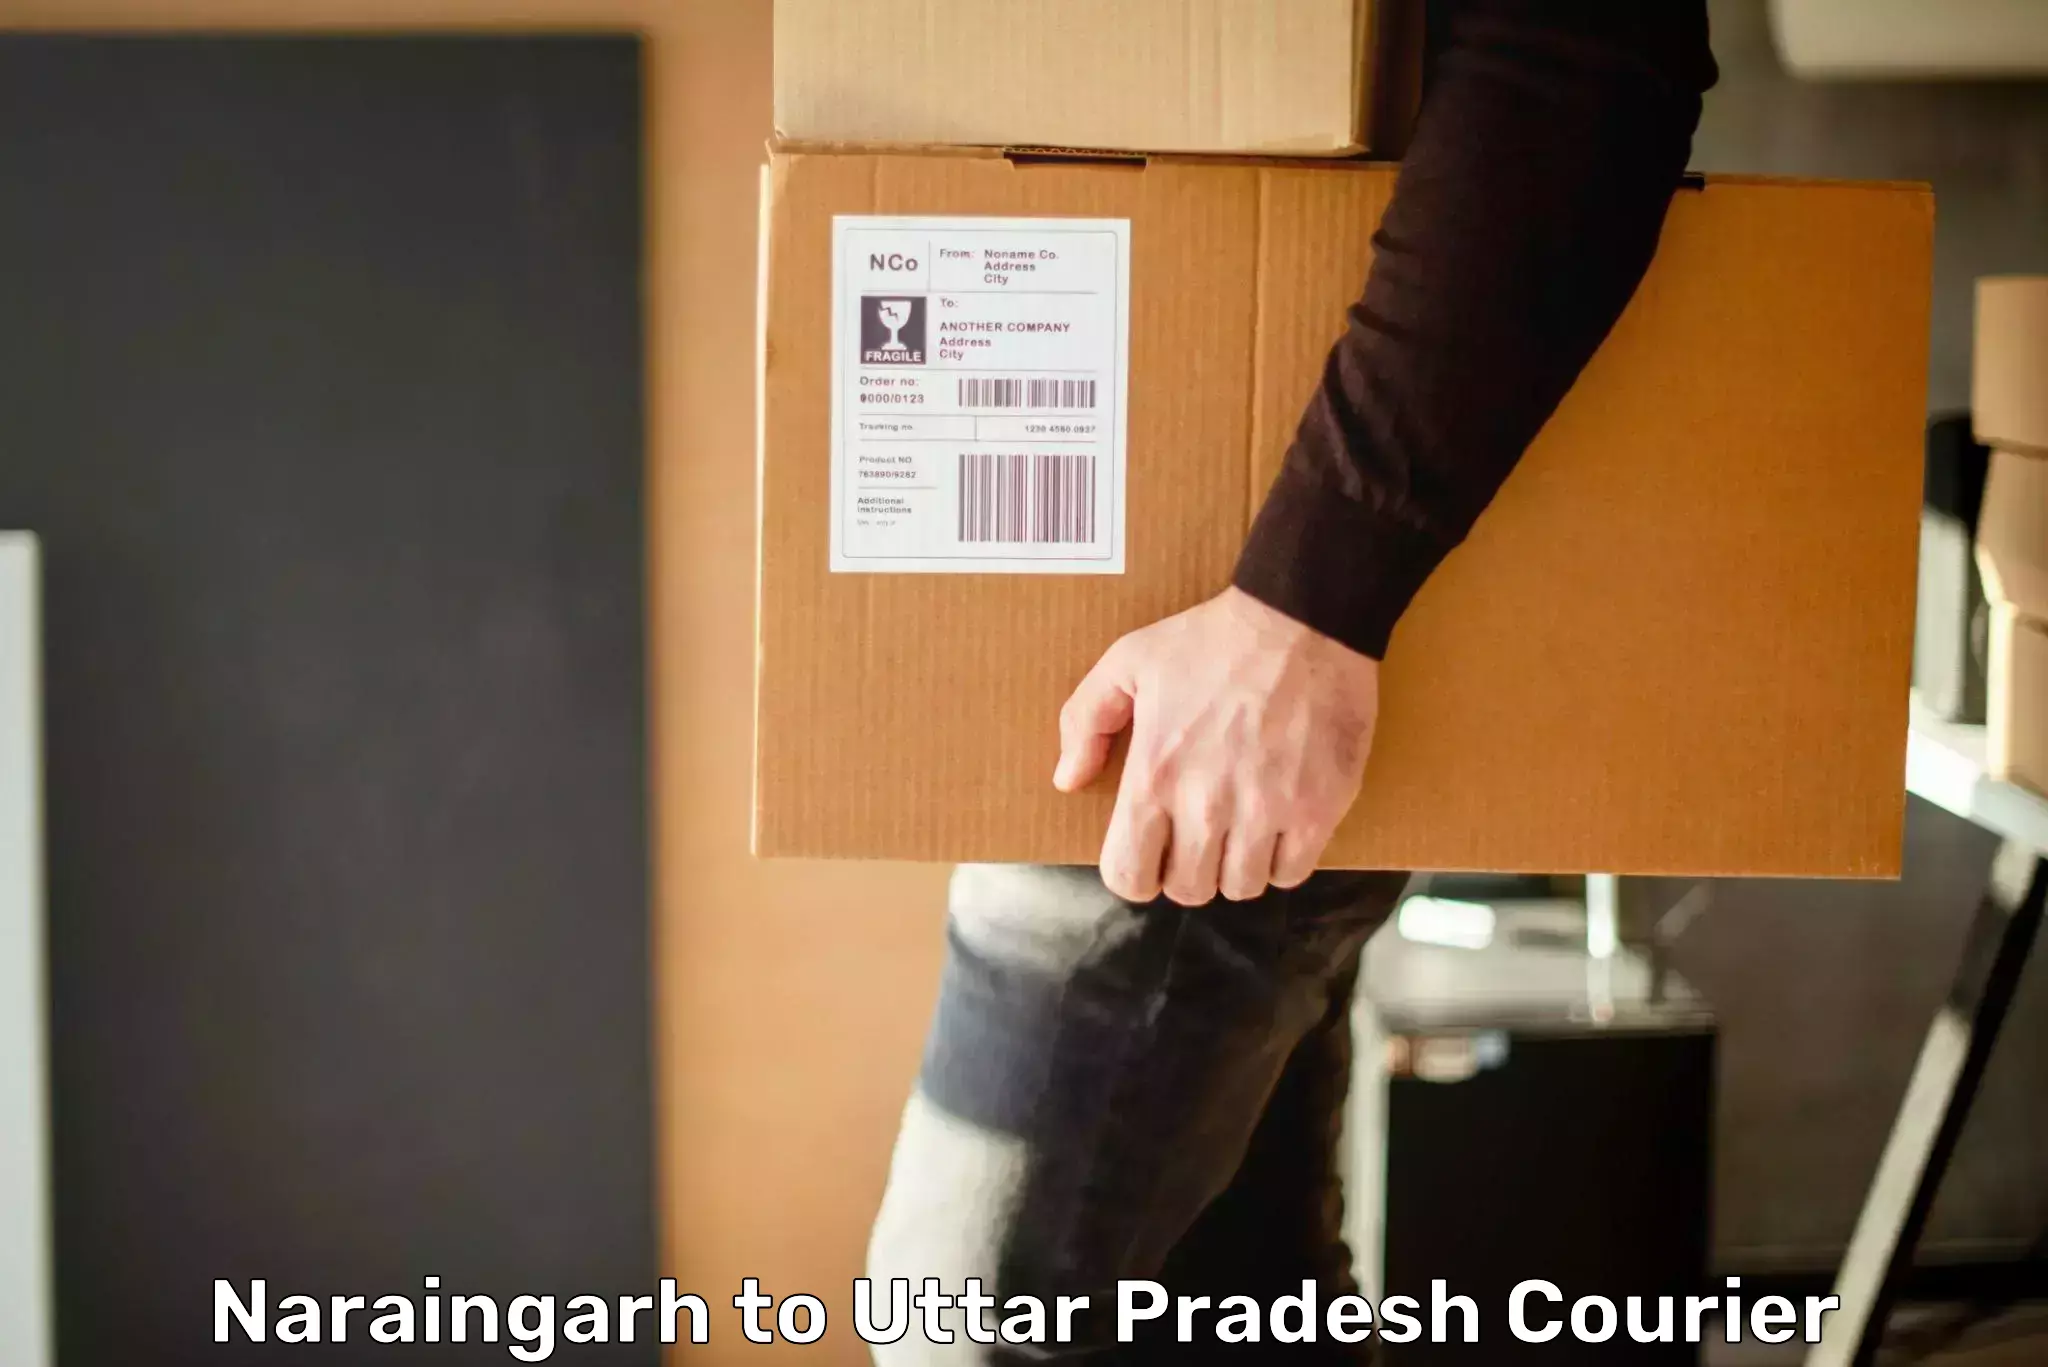 Customer-centric shipping Naraingarh to Sirathu